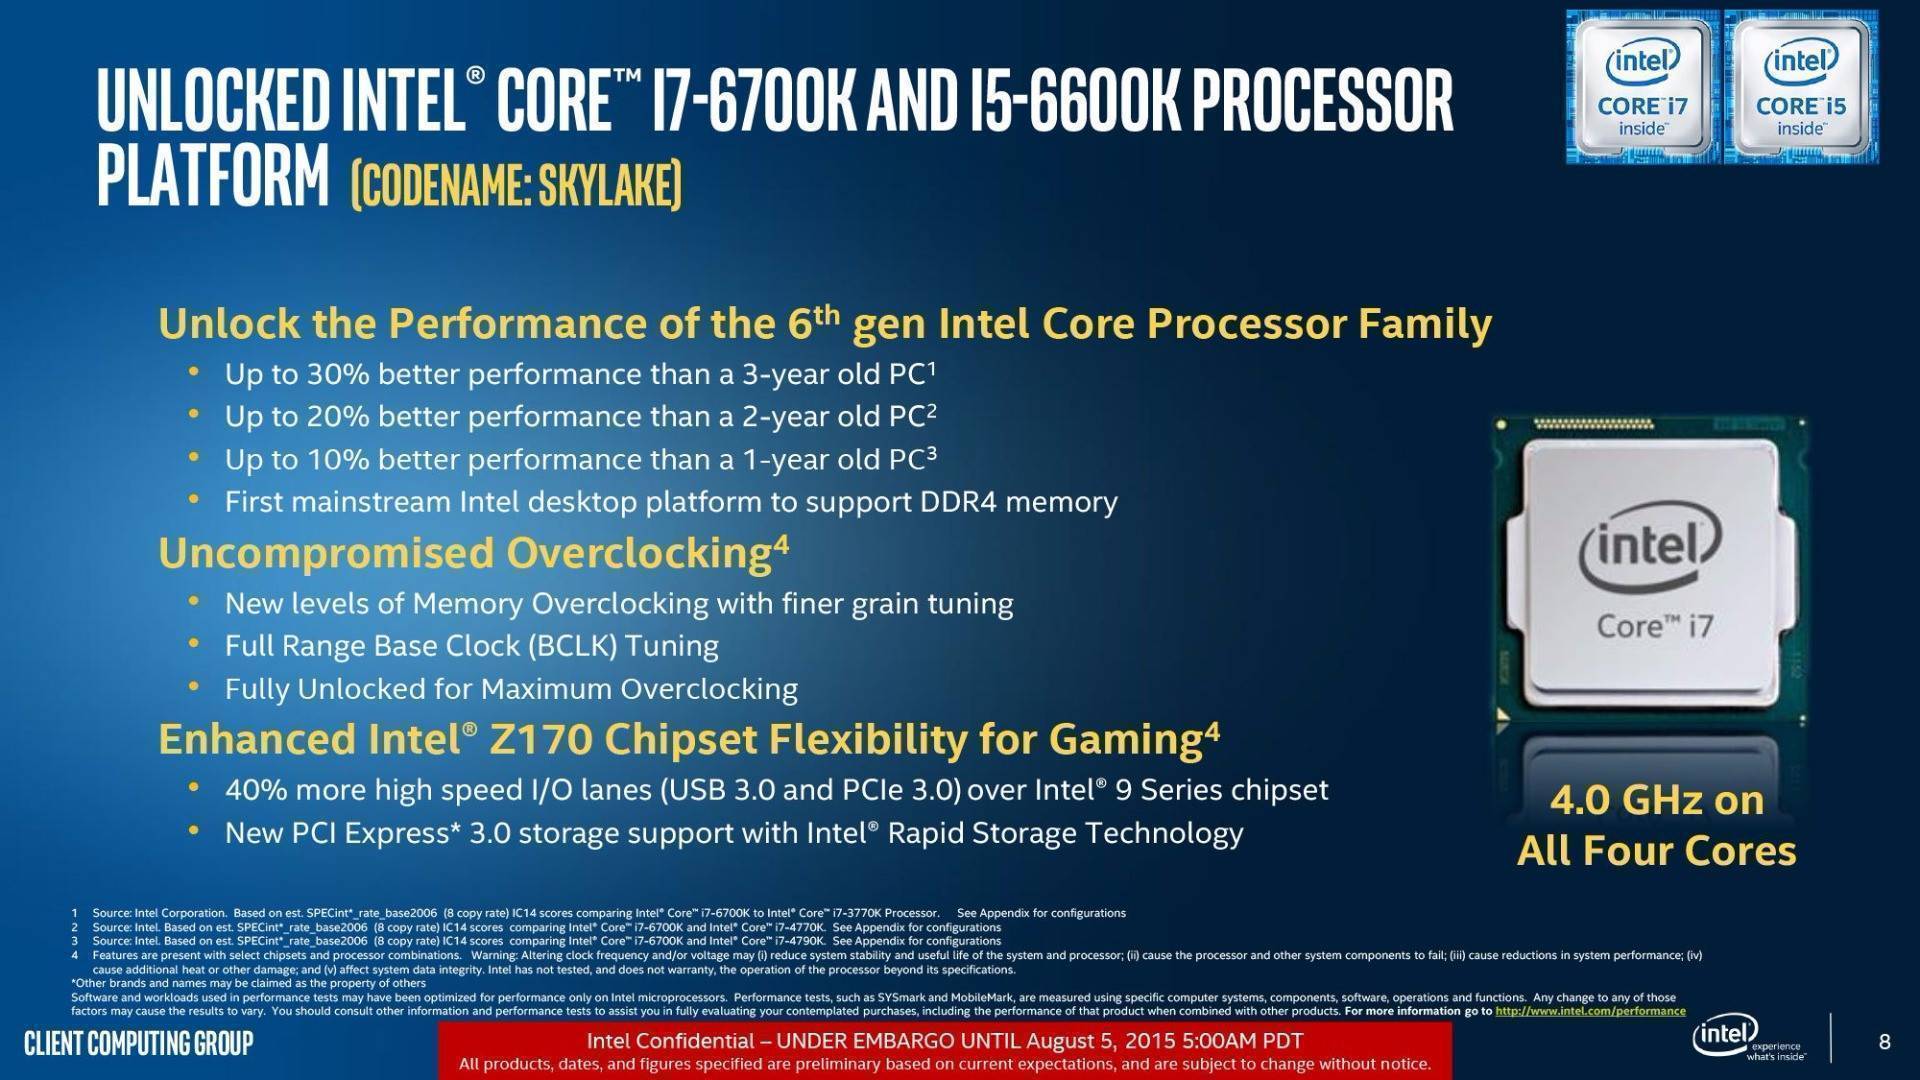 Intel Core i7 Processor cheap - Price of $159.43